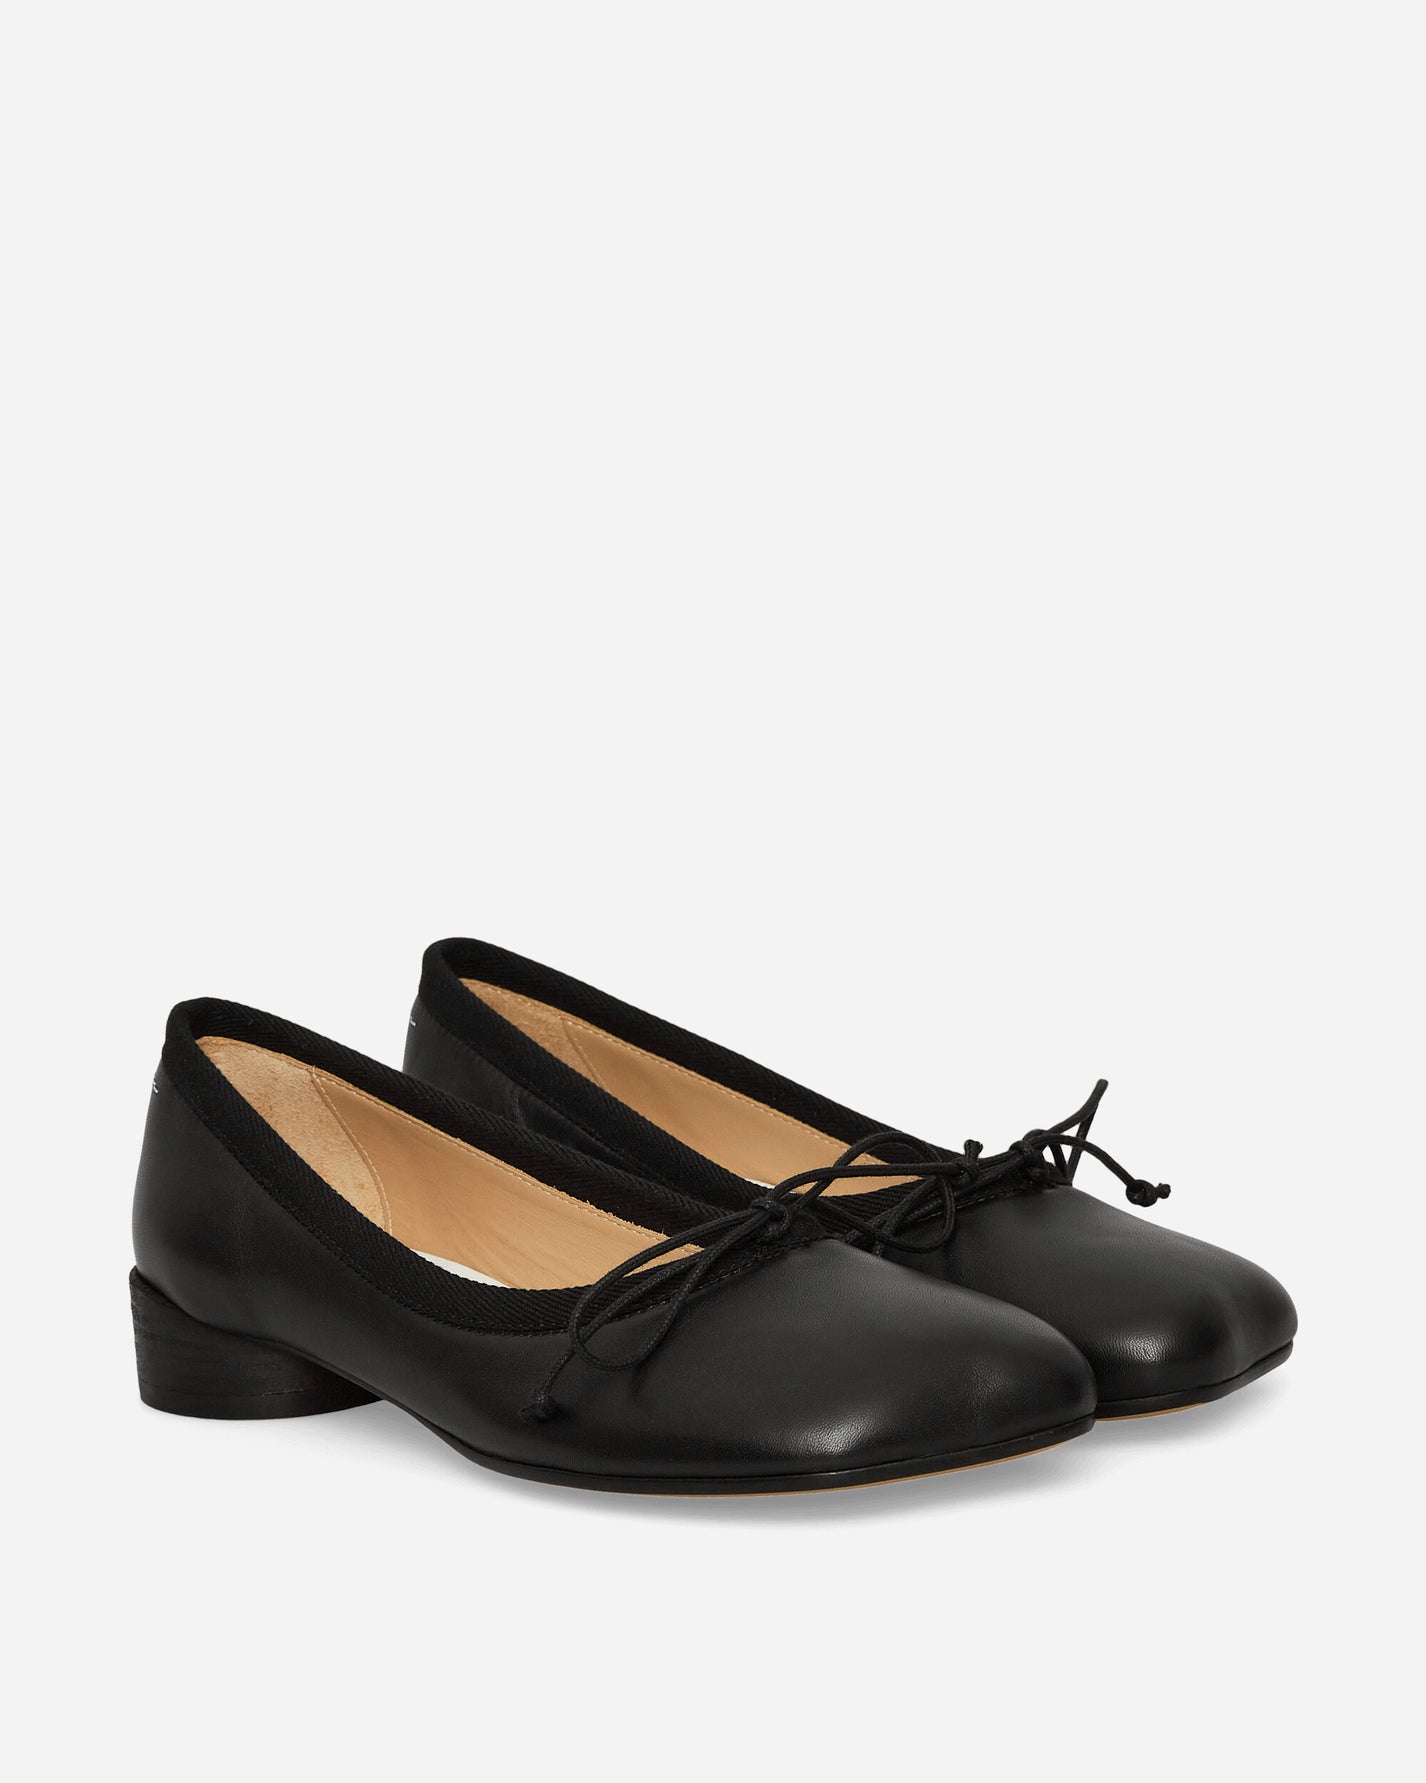 MM6 Maison Margiela Wmns Ballet Shoe Black Classic Shoes Flat Shoes S59WZ0096 T8013